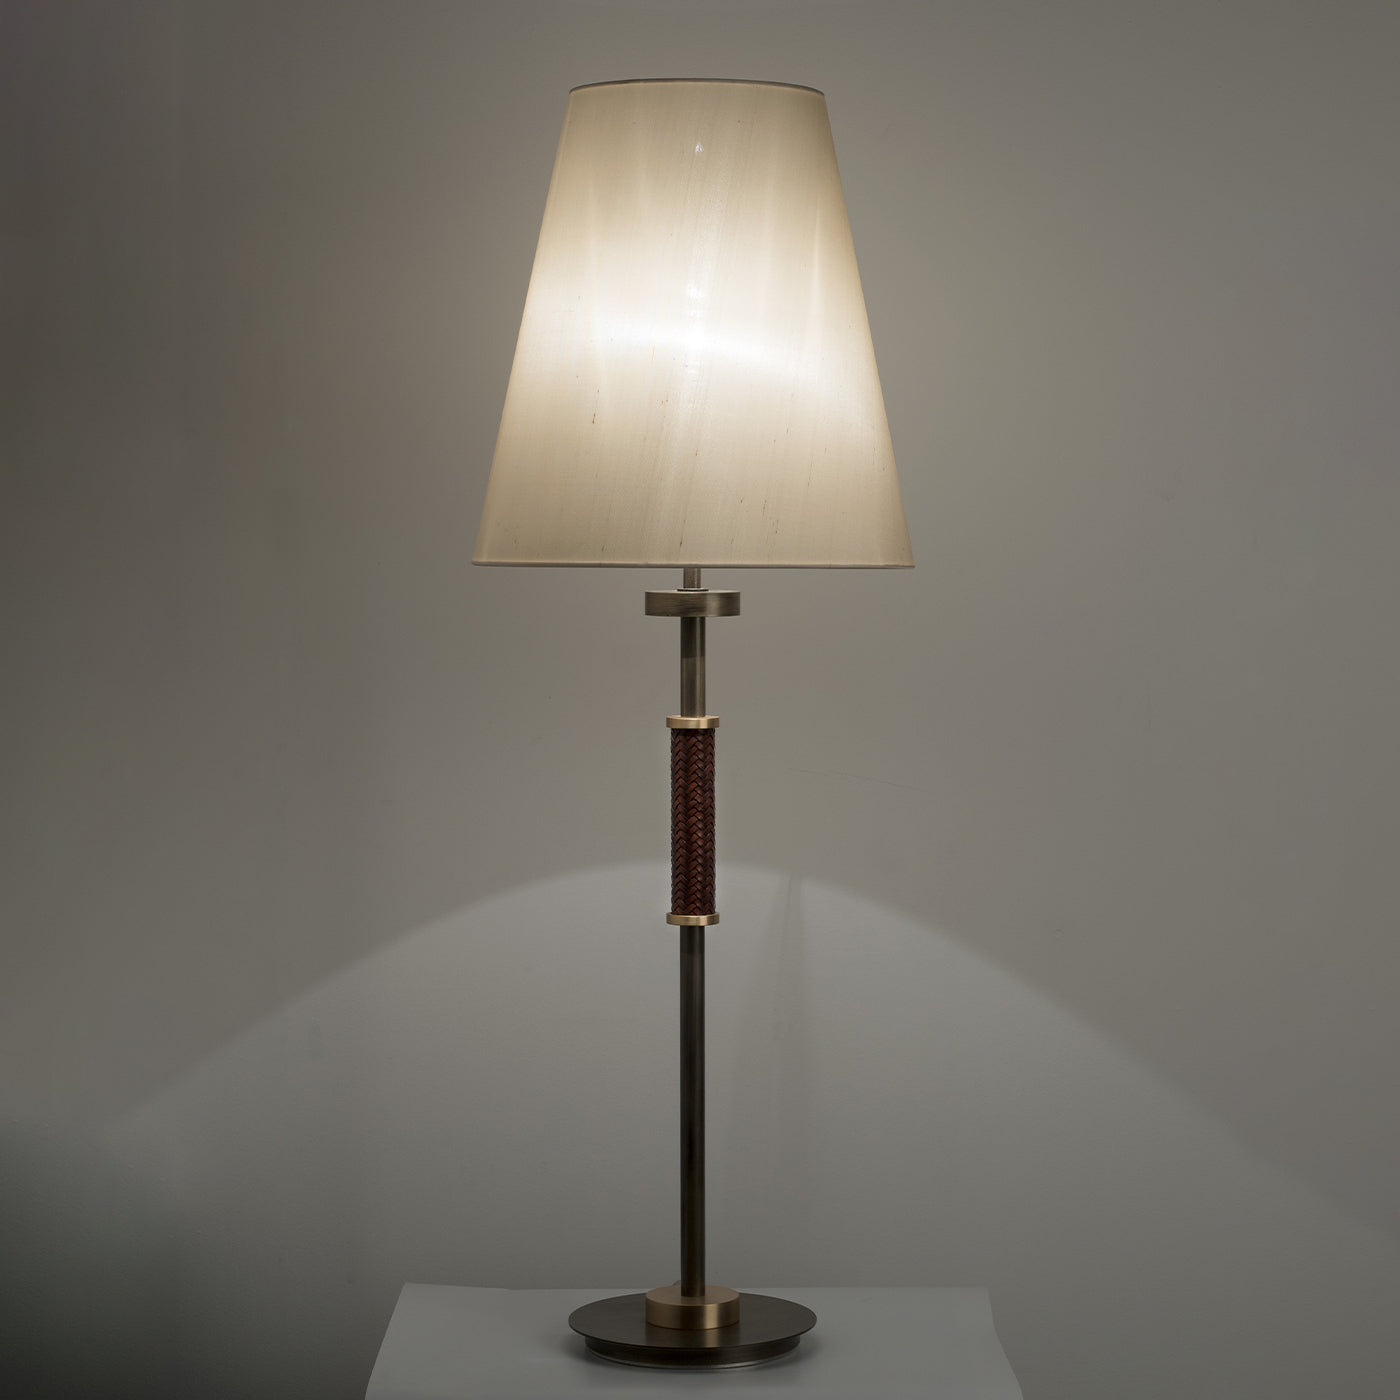 Dew Table Lamp By Patrizia Garganti #1 - Alternative view 3